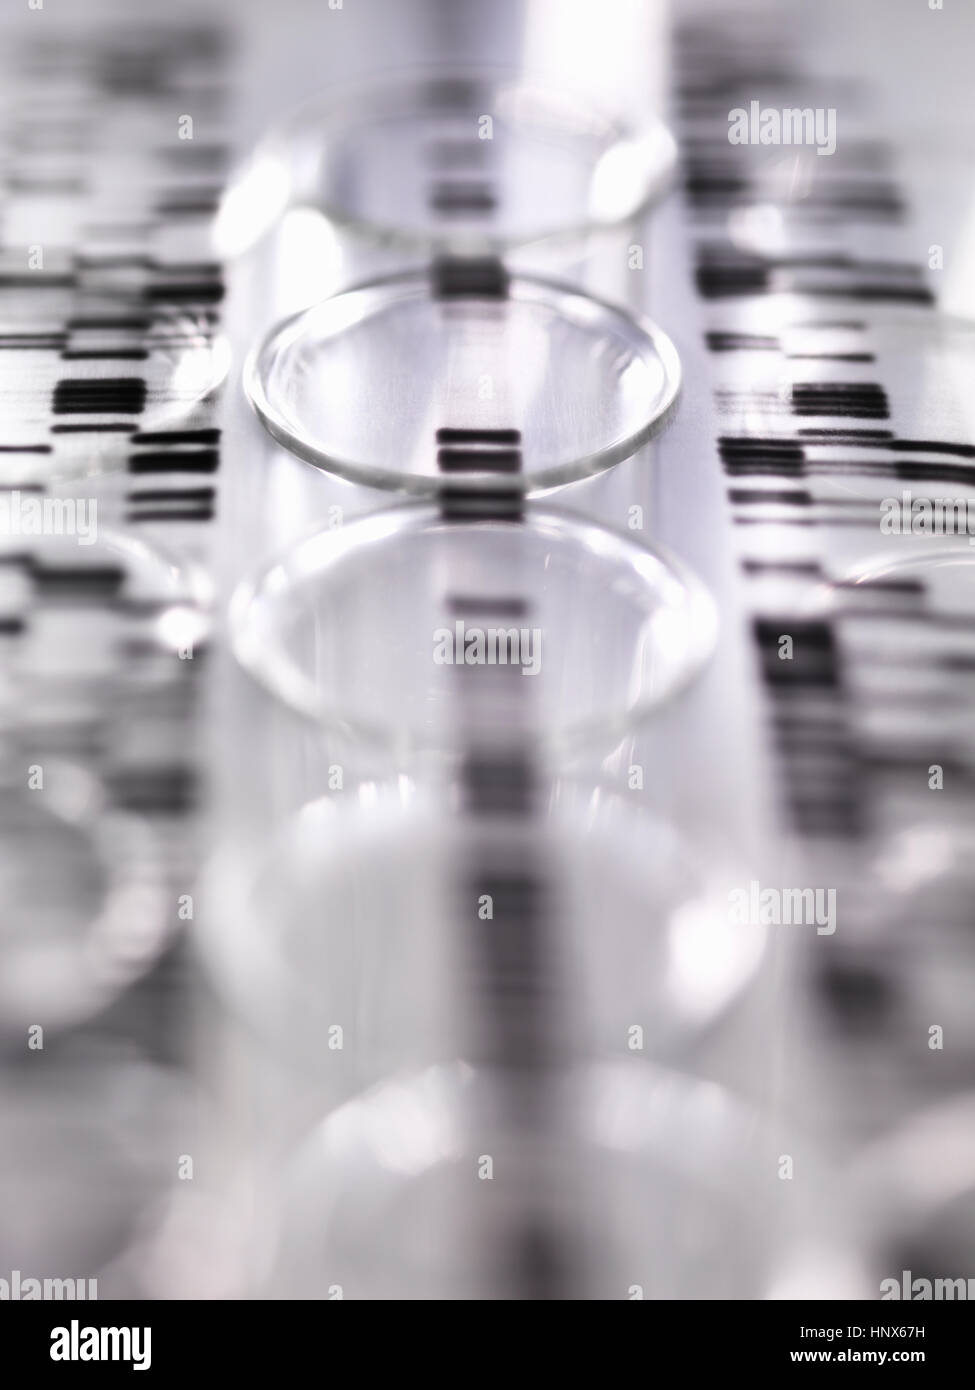 DNA-Autoradiogram gel zur Veranschaulichung Genergebnisse Verlegung auf eine Reihe von Reagenzgläsern im Labor Stockfoto